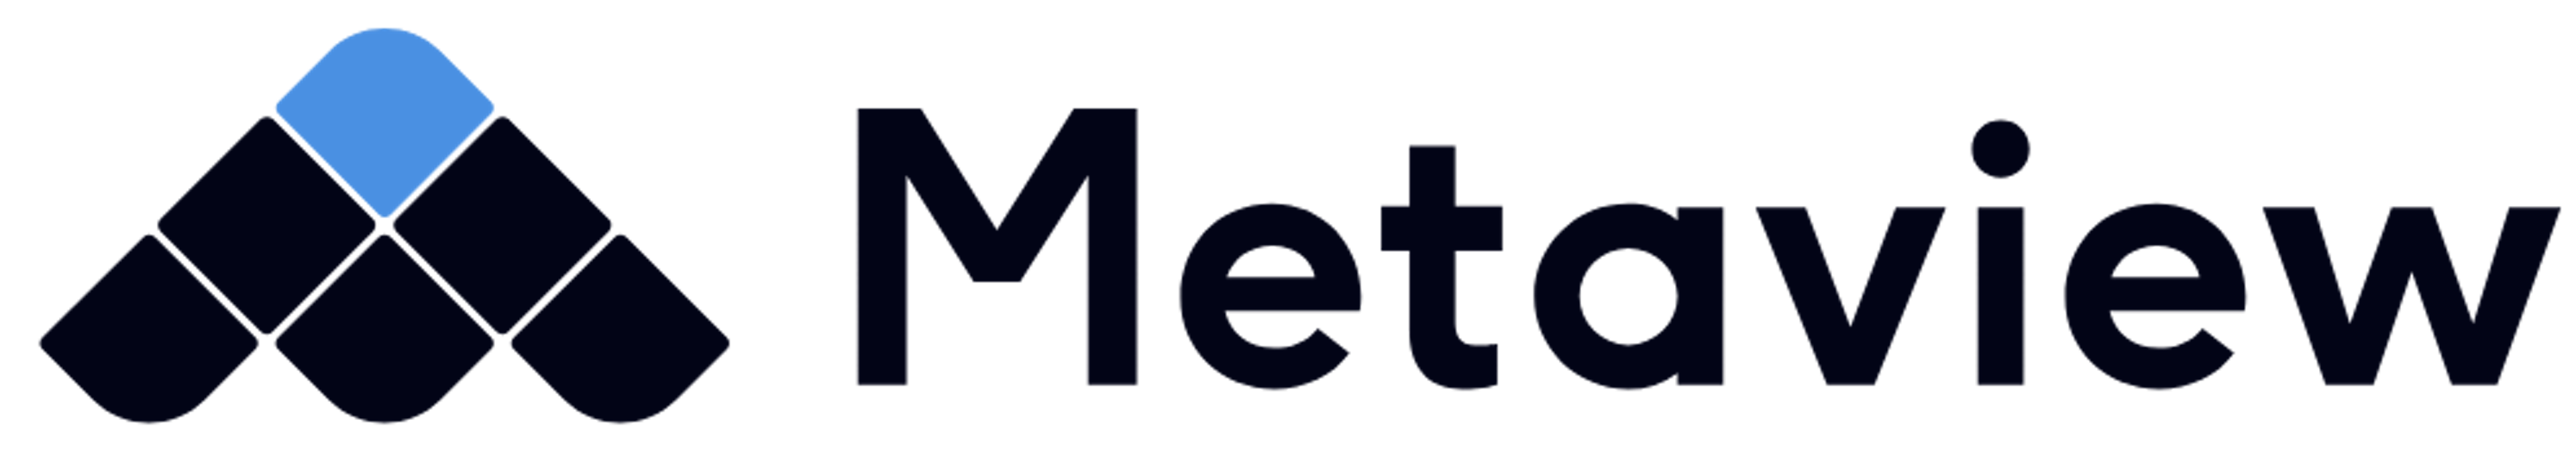 metaview logo